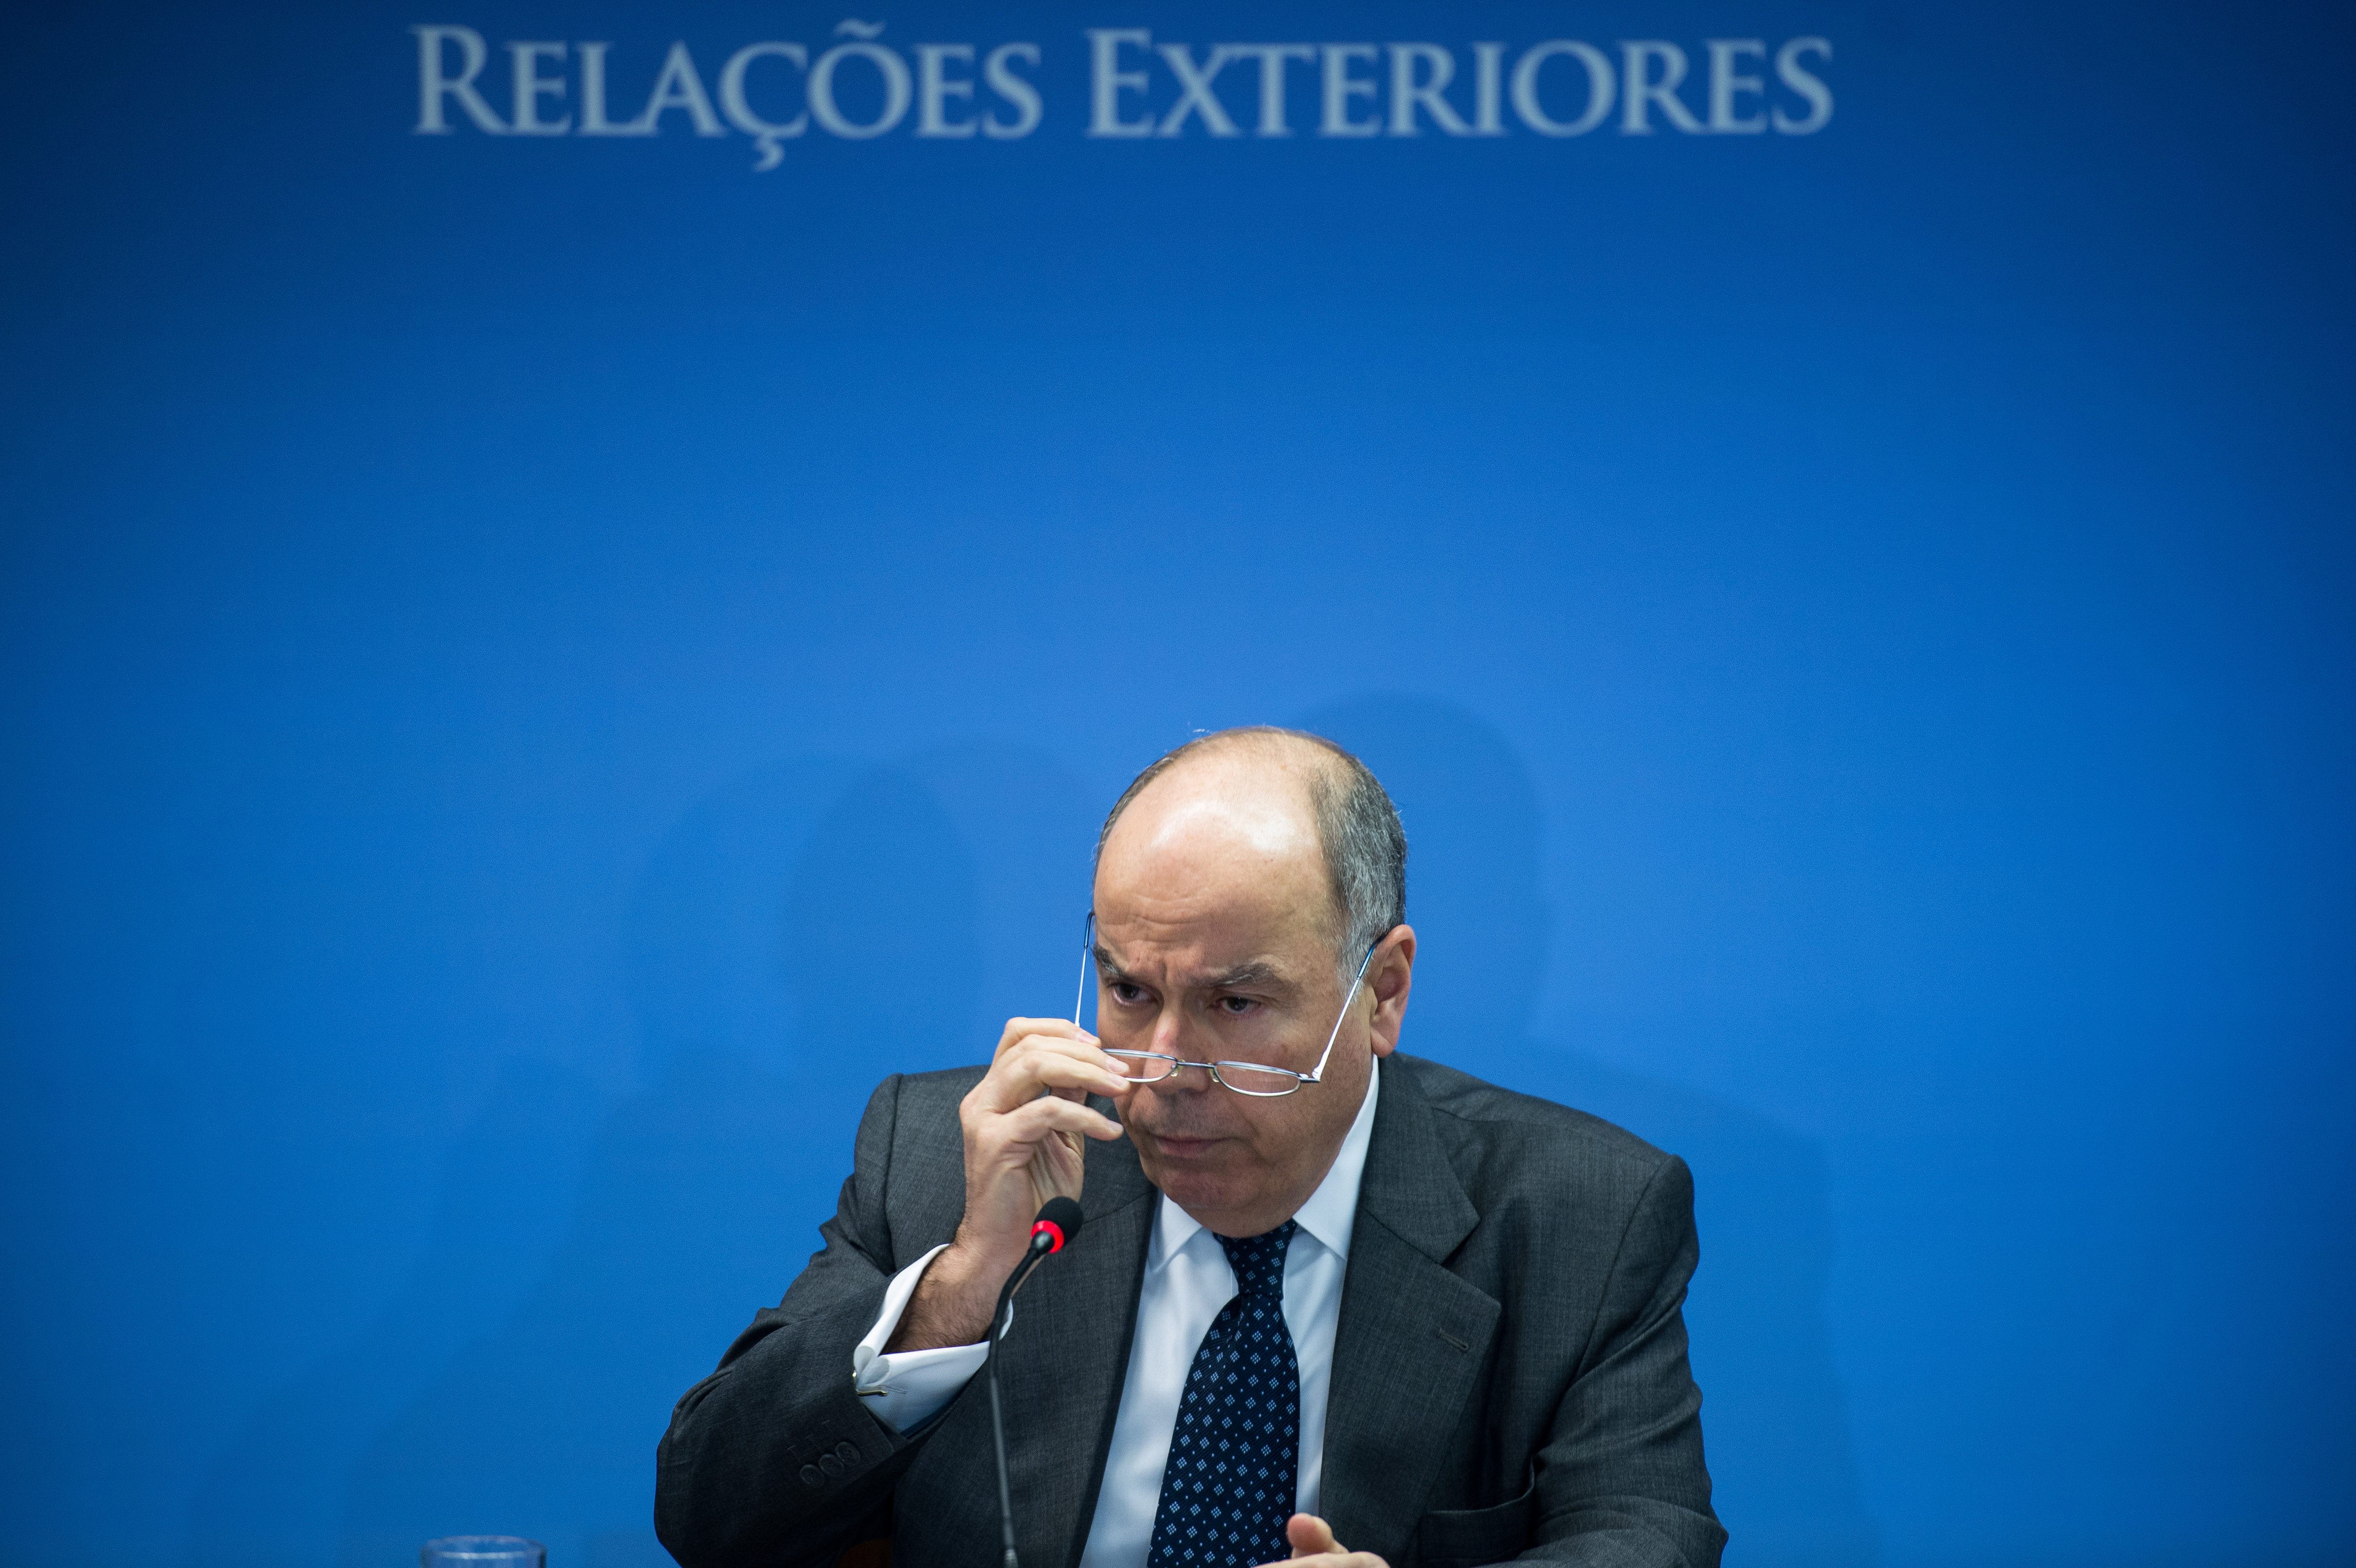 O Ministro das Relações Exteriores, Mauro Vieira, deu ênfase para a economia em seu discurso de posse